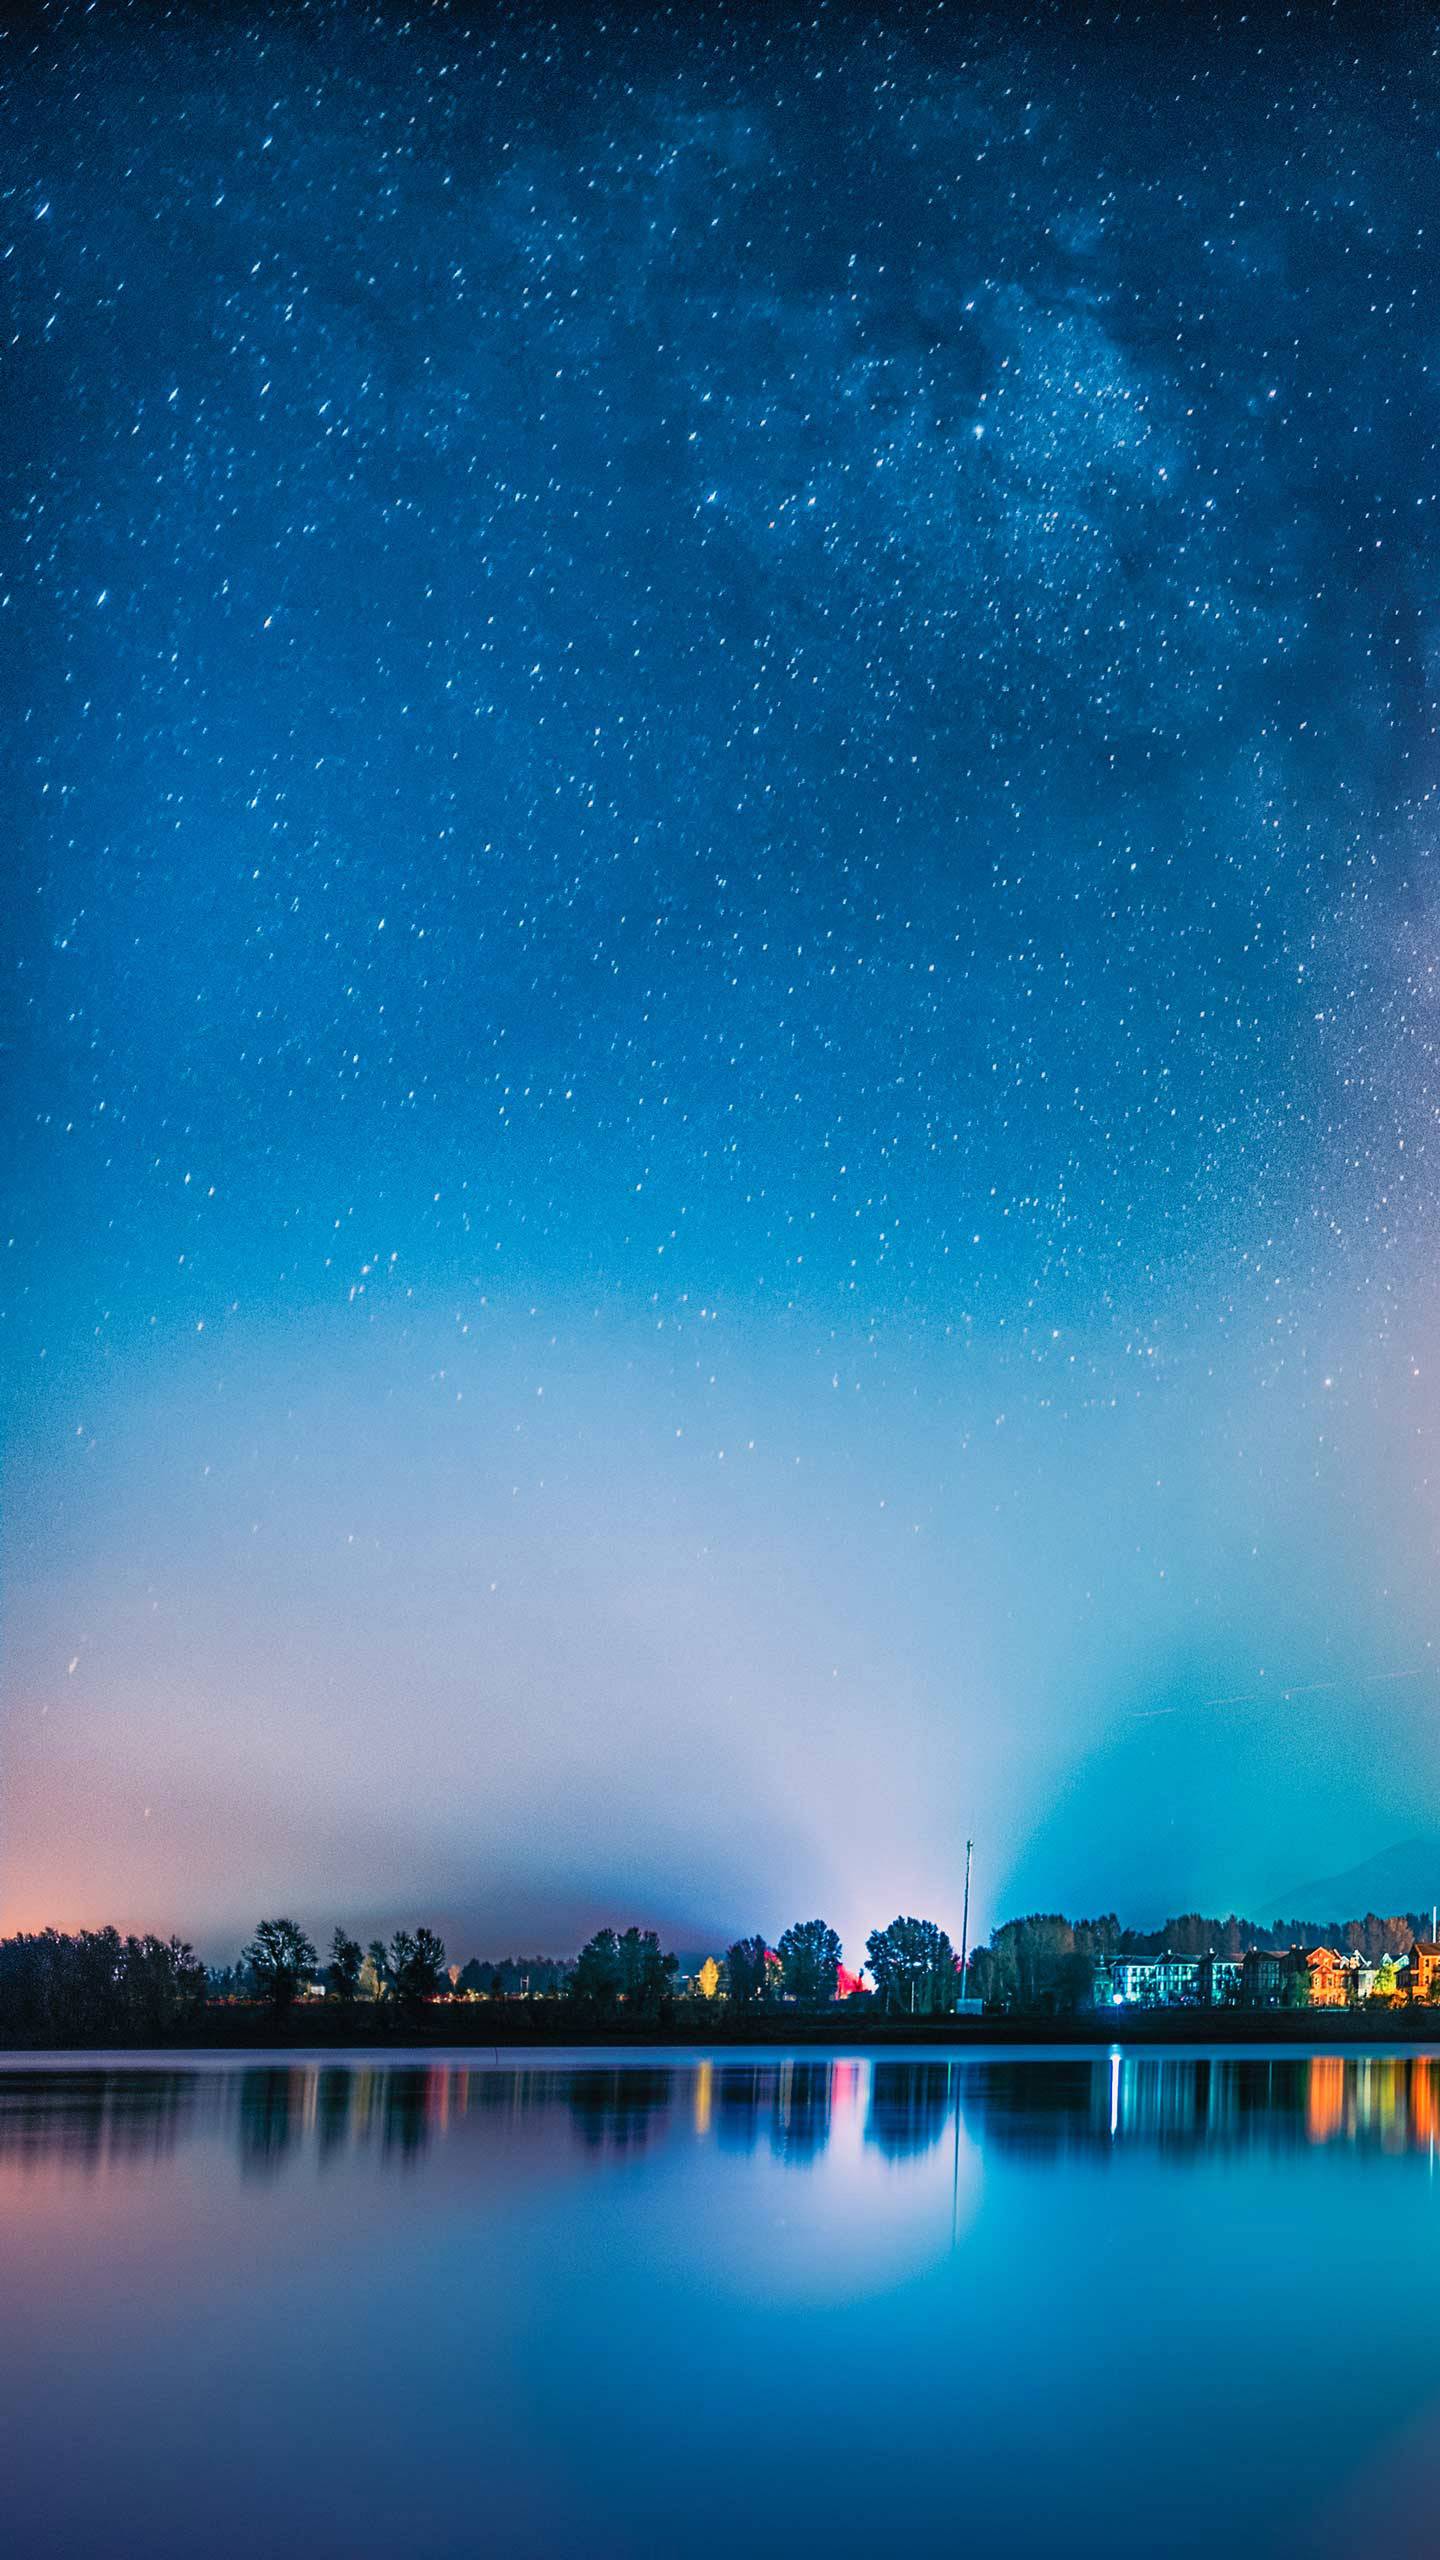 تصویر پس زمینه بنفش رنگ با آسمان زیبا در شب و ستاره های درخشان